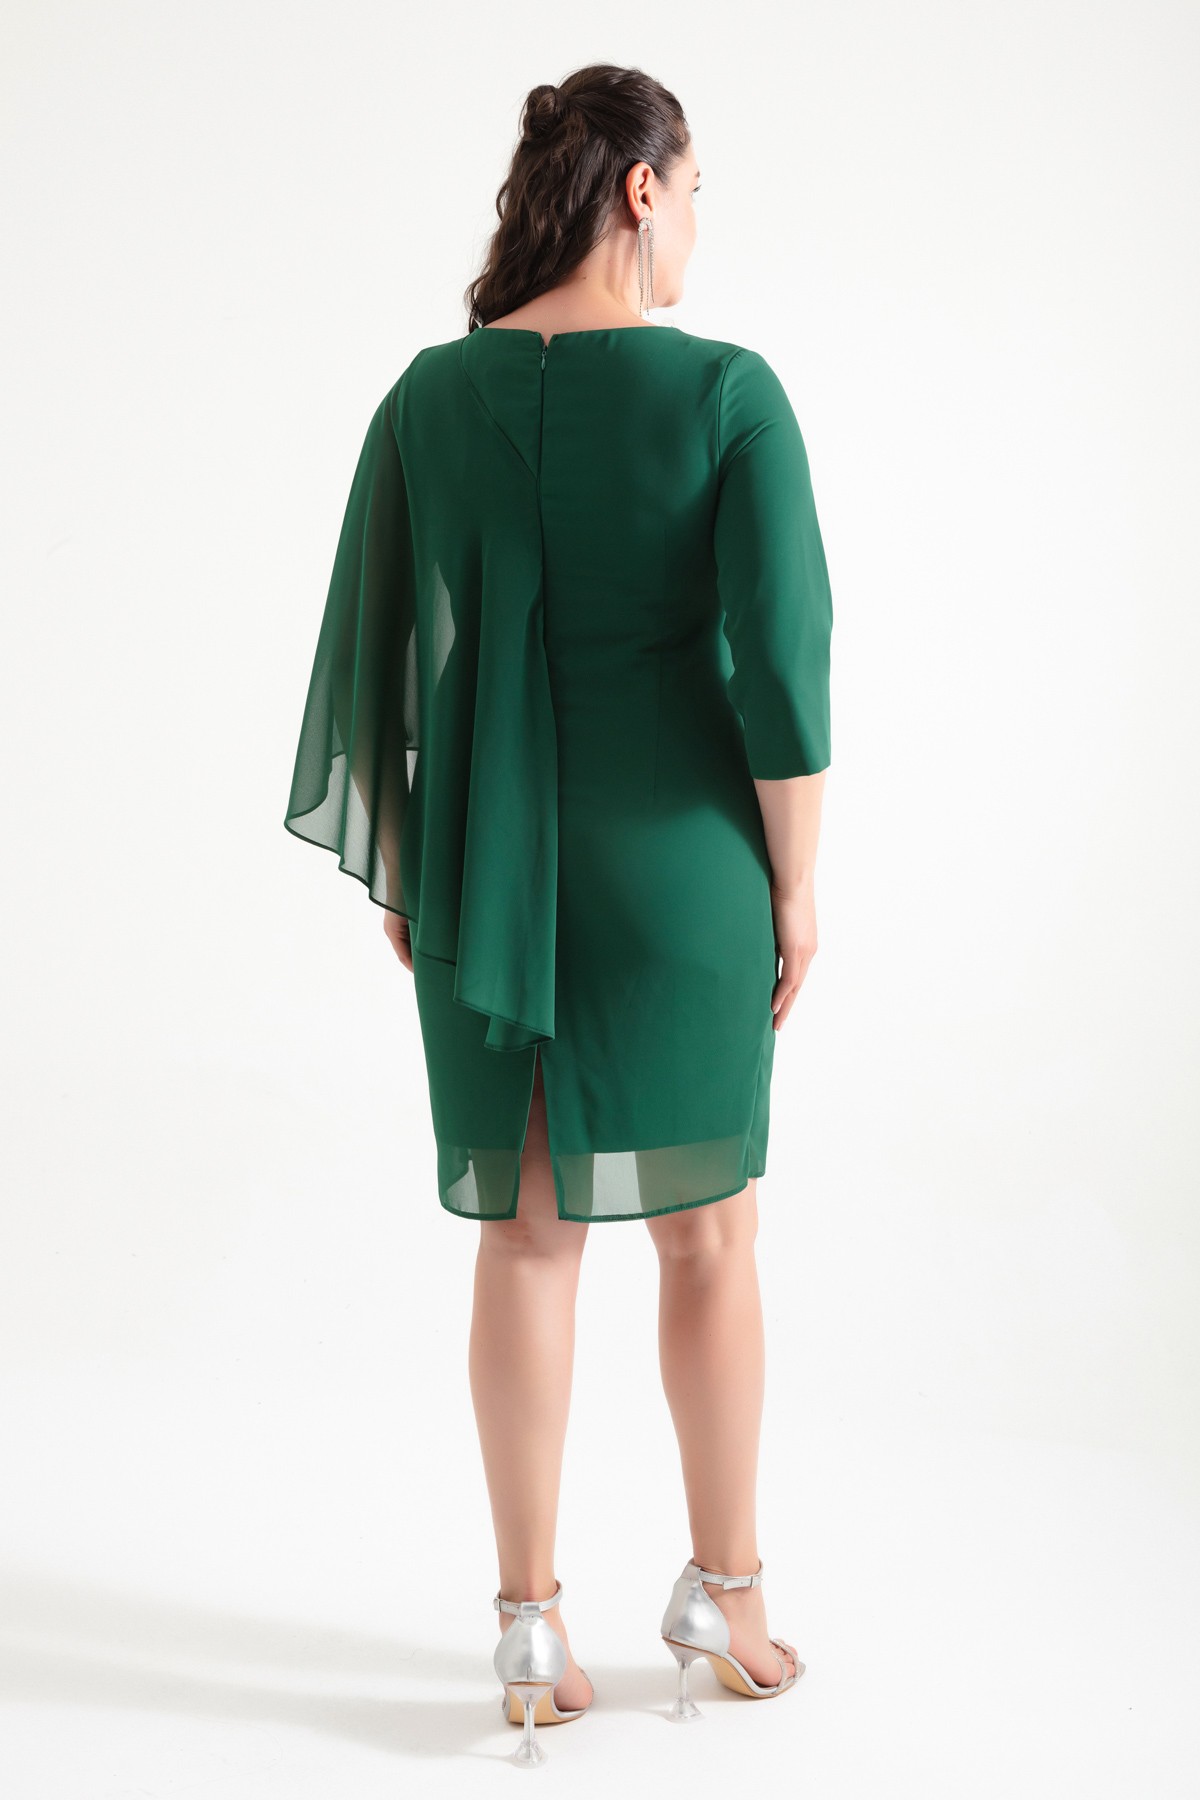 Kadın V Yaka Taşlı Büyük Beden Abiye Elbise - Zümrüt Yeşili